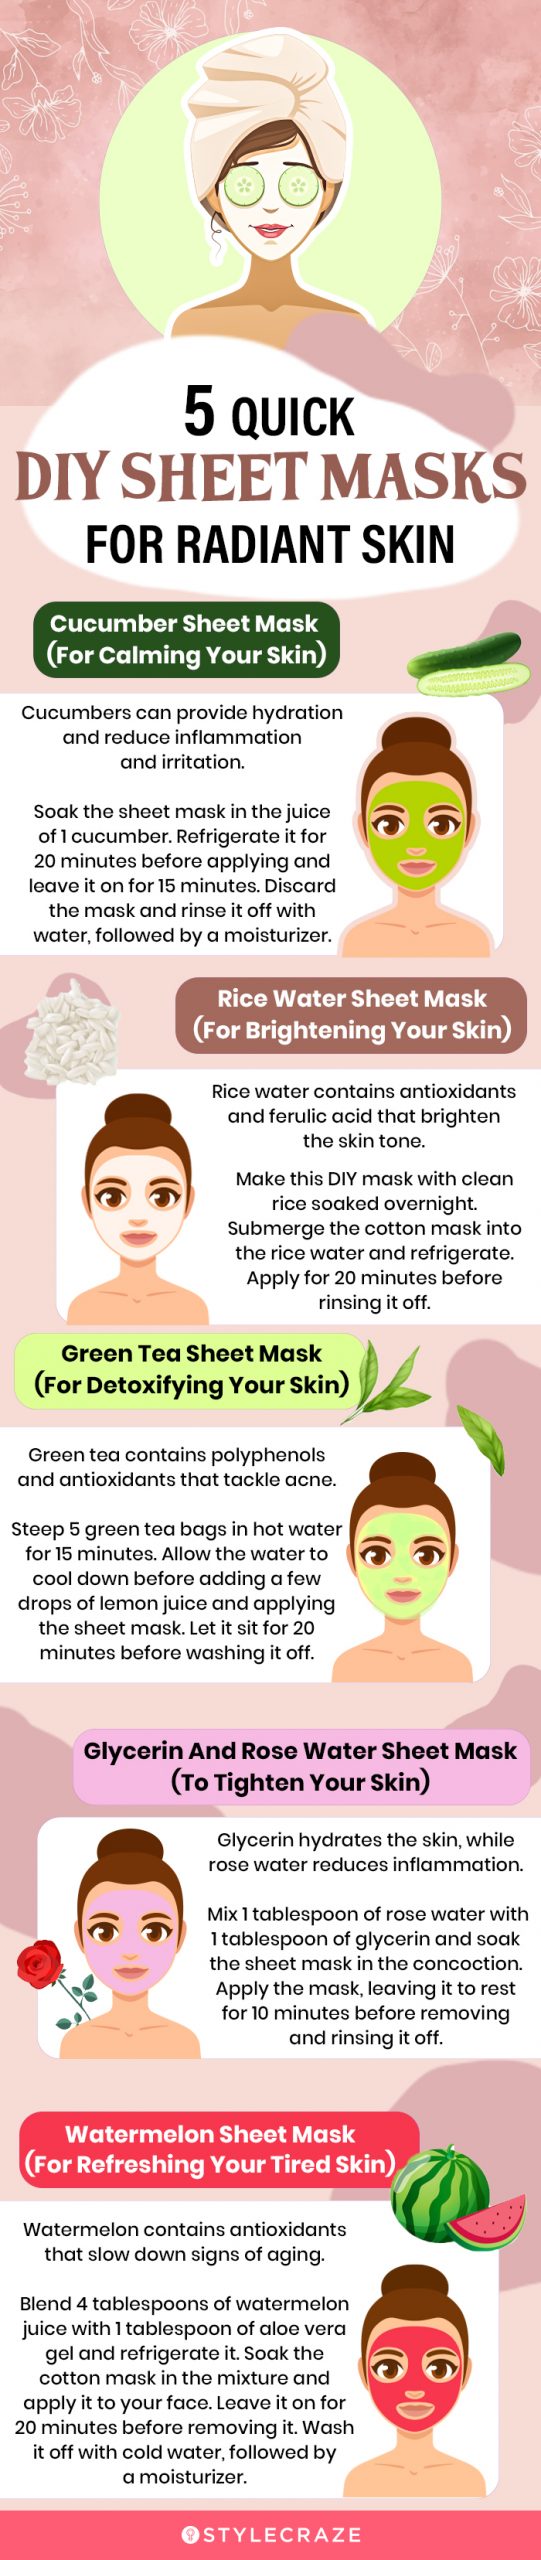 5 quick diy sheet masks for radiant skin (infographic)